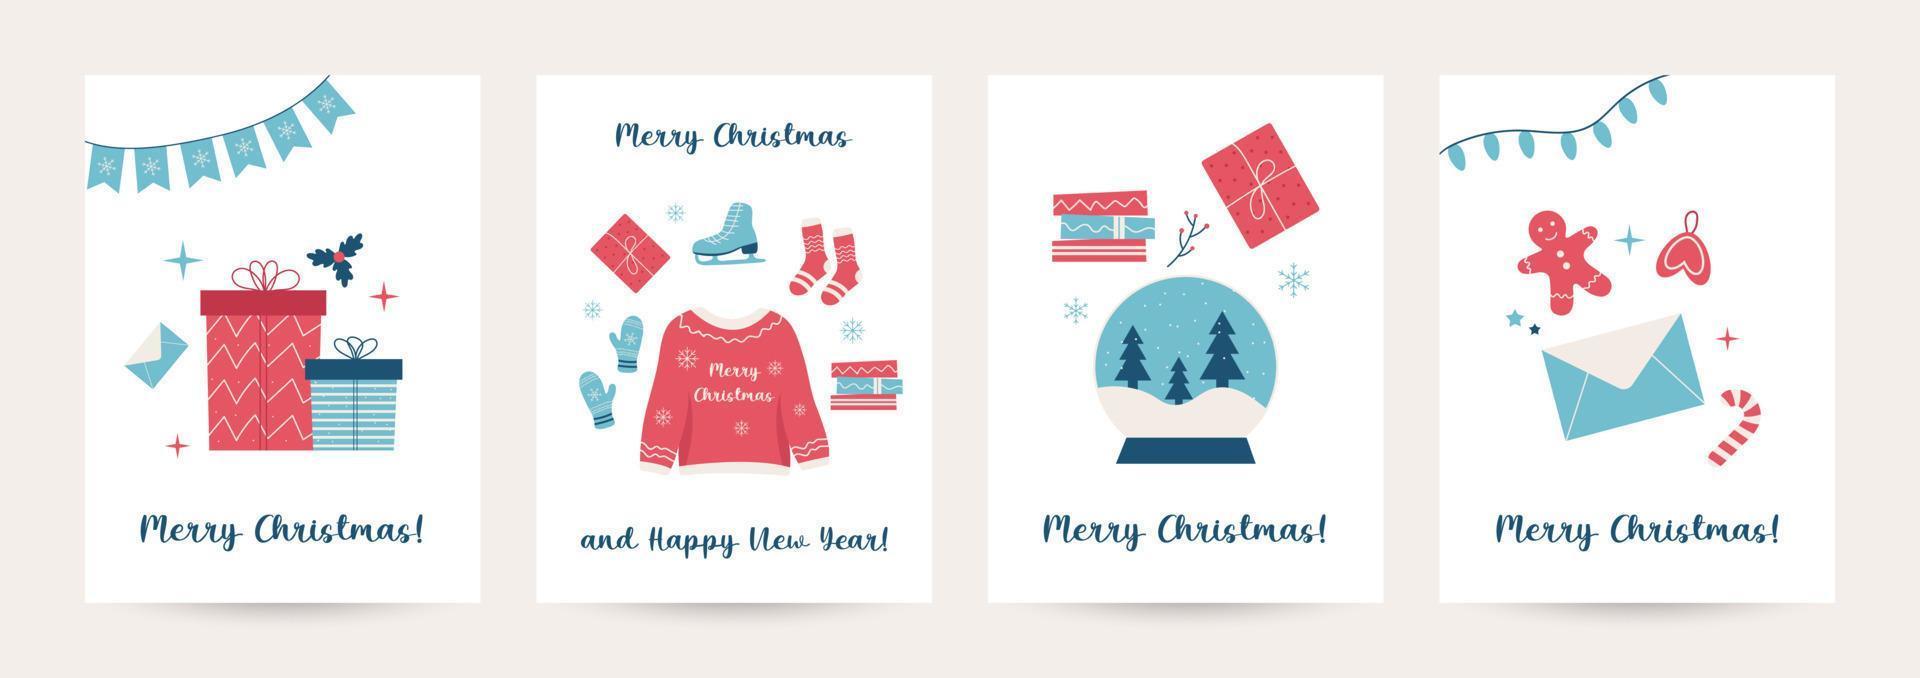 verzameling van winter knuffelen achtergrond reeks met geschenken, bomen, Kerstmis knuffelen elementen, bewerkbare vector illustratie voor Kerstmis uitnodiging, ansichtkaart en website banier, groet kaarten